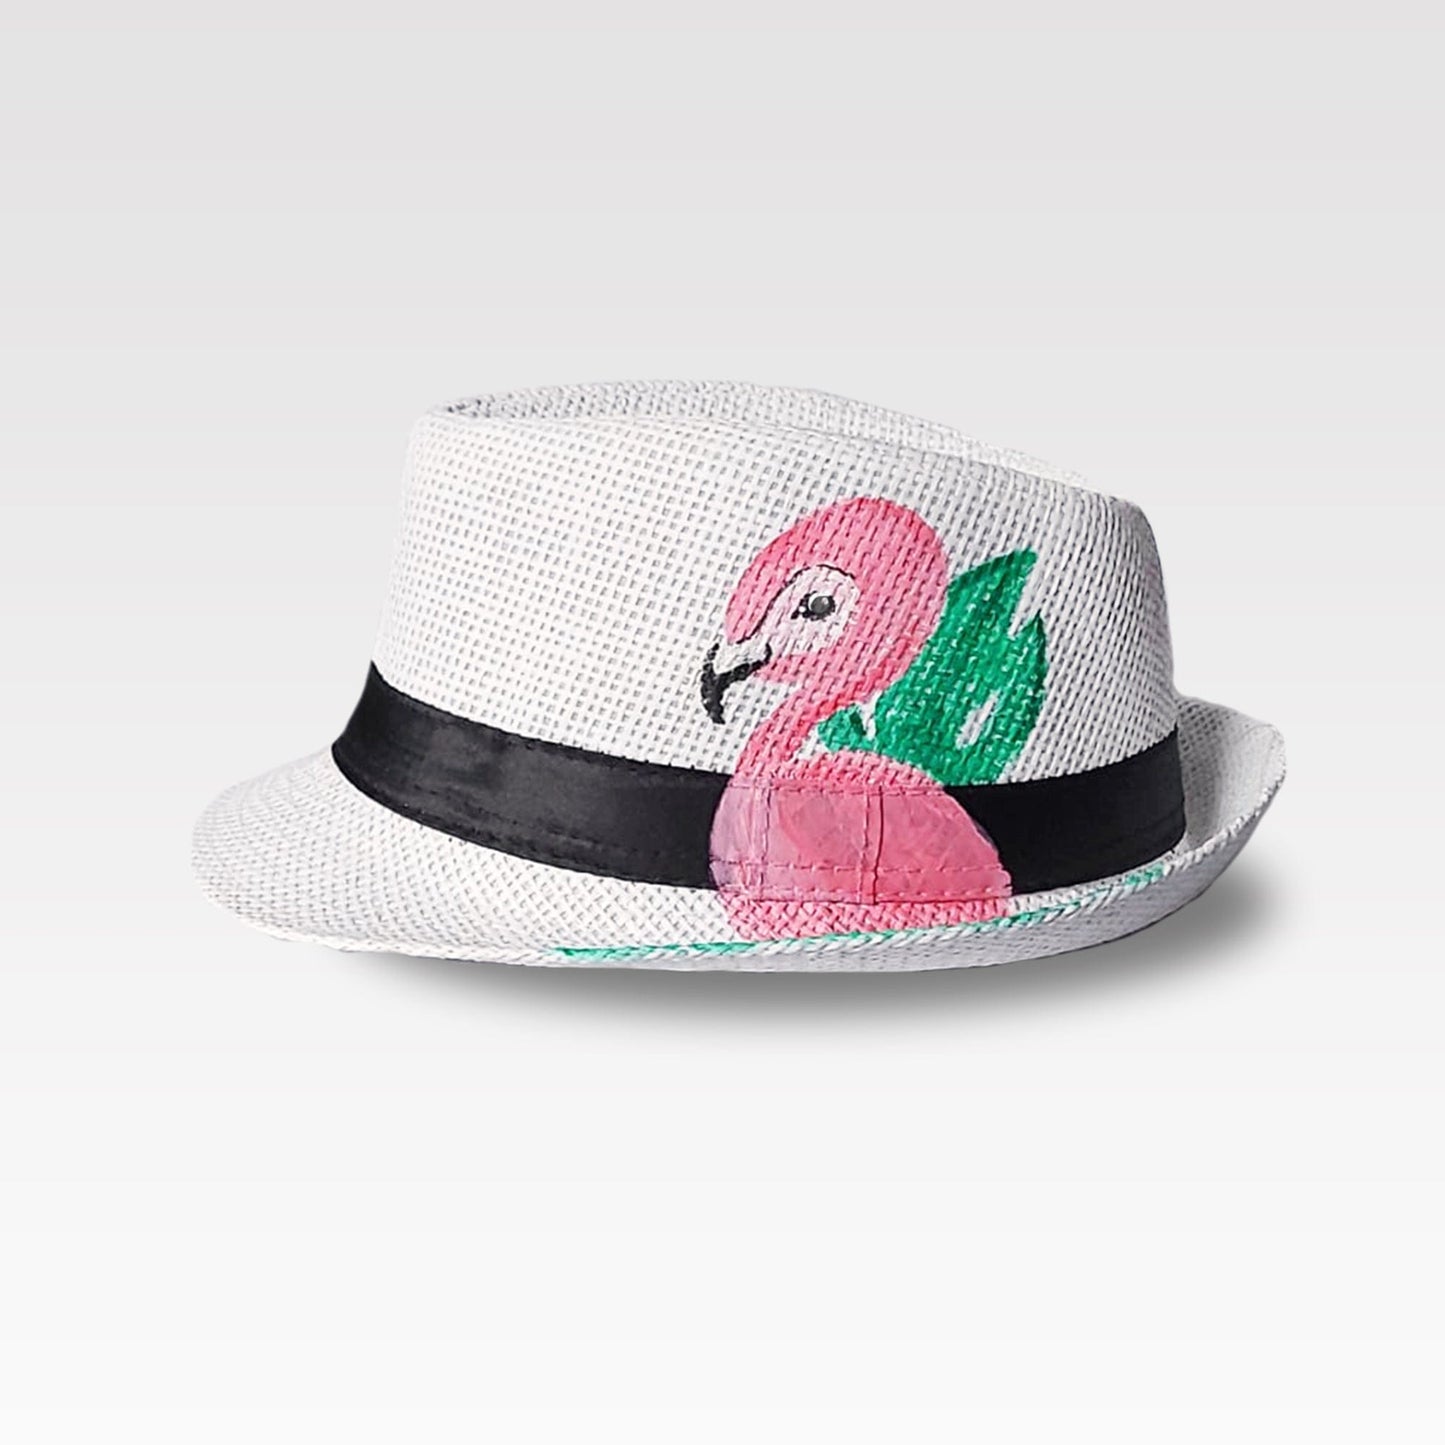 The Miami Hat